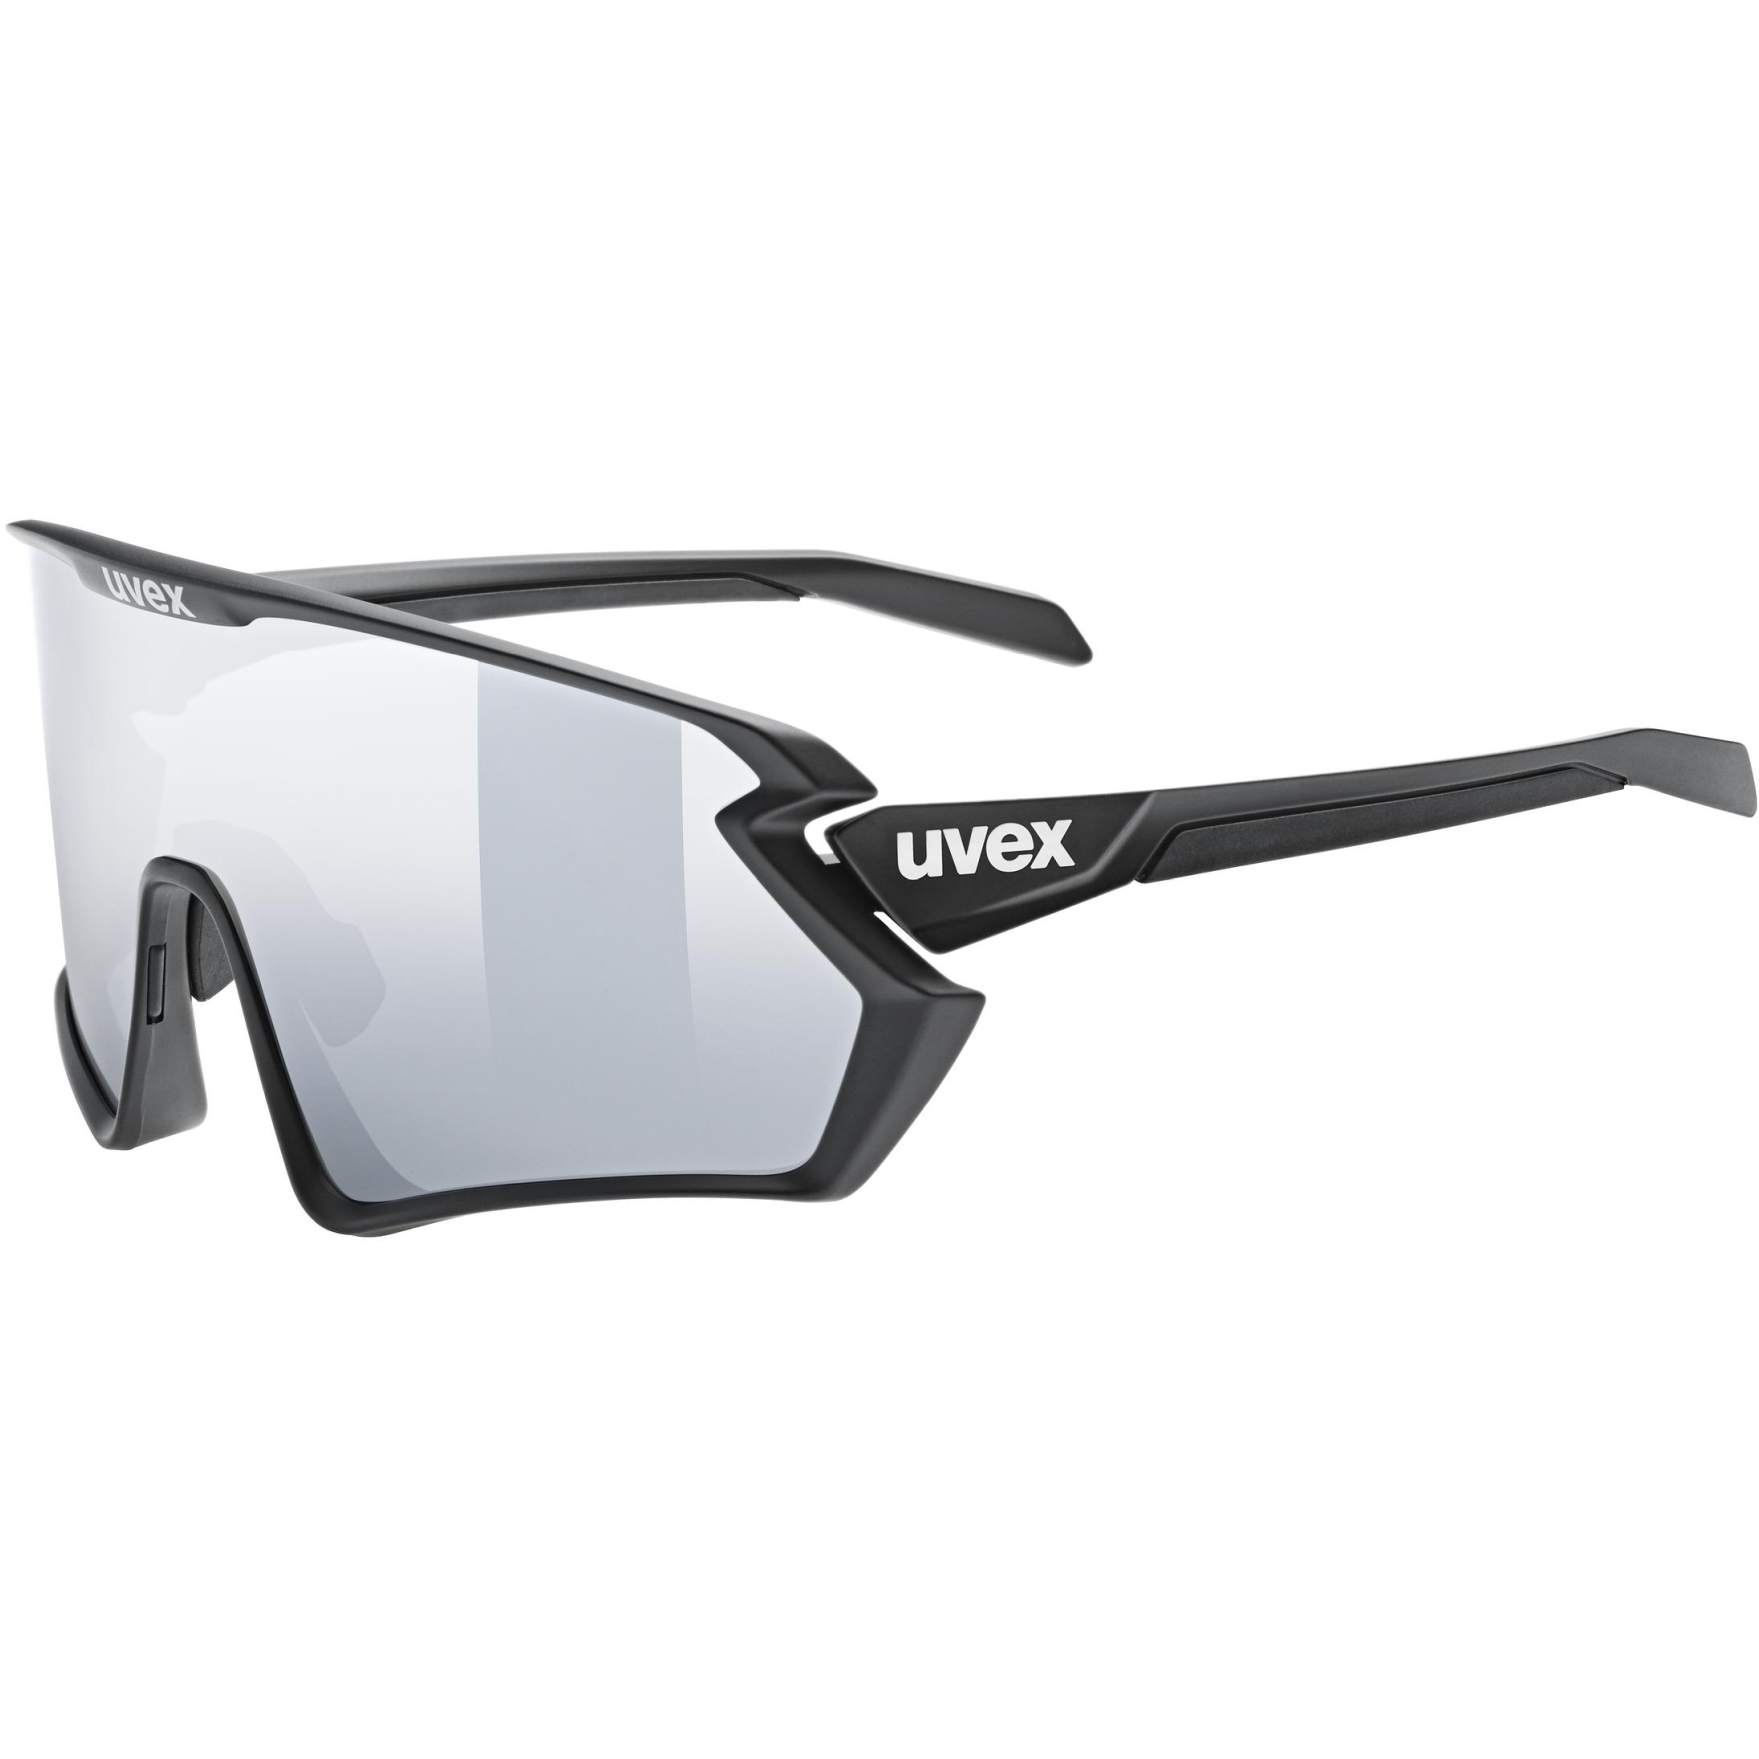 Produktbild von Uvex sportstyle 231 2.0 Set Brille - black matt/supravision mirror silver + clear